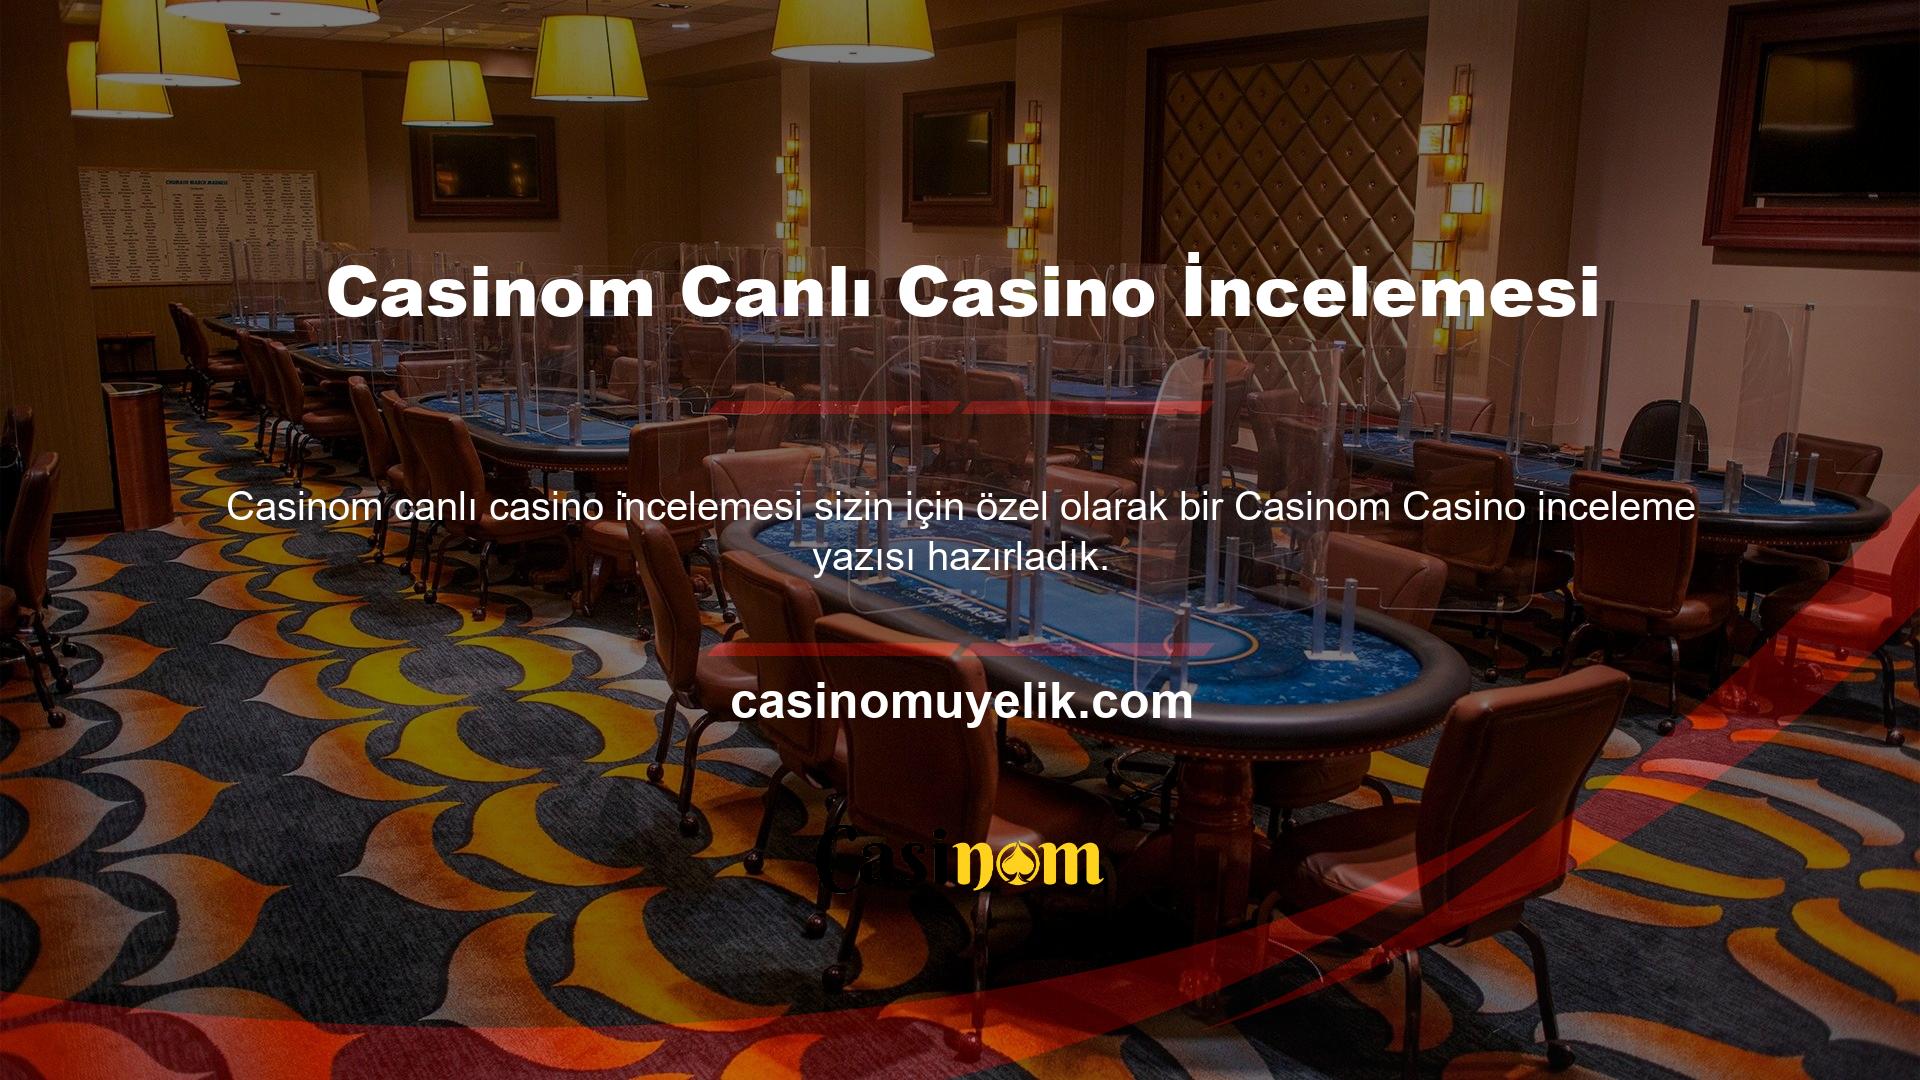 Sitenin casino sayfasına girdiğinizde en üstte Casinom canlı casino incelemesindeki en popüler turnuvalar ve oyunlar hakkında bilgiler görüntülenir